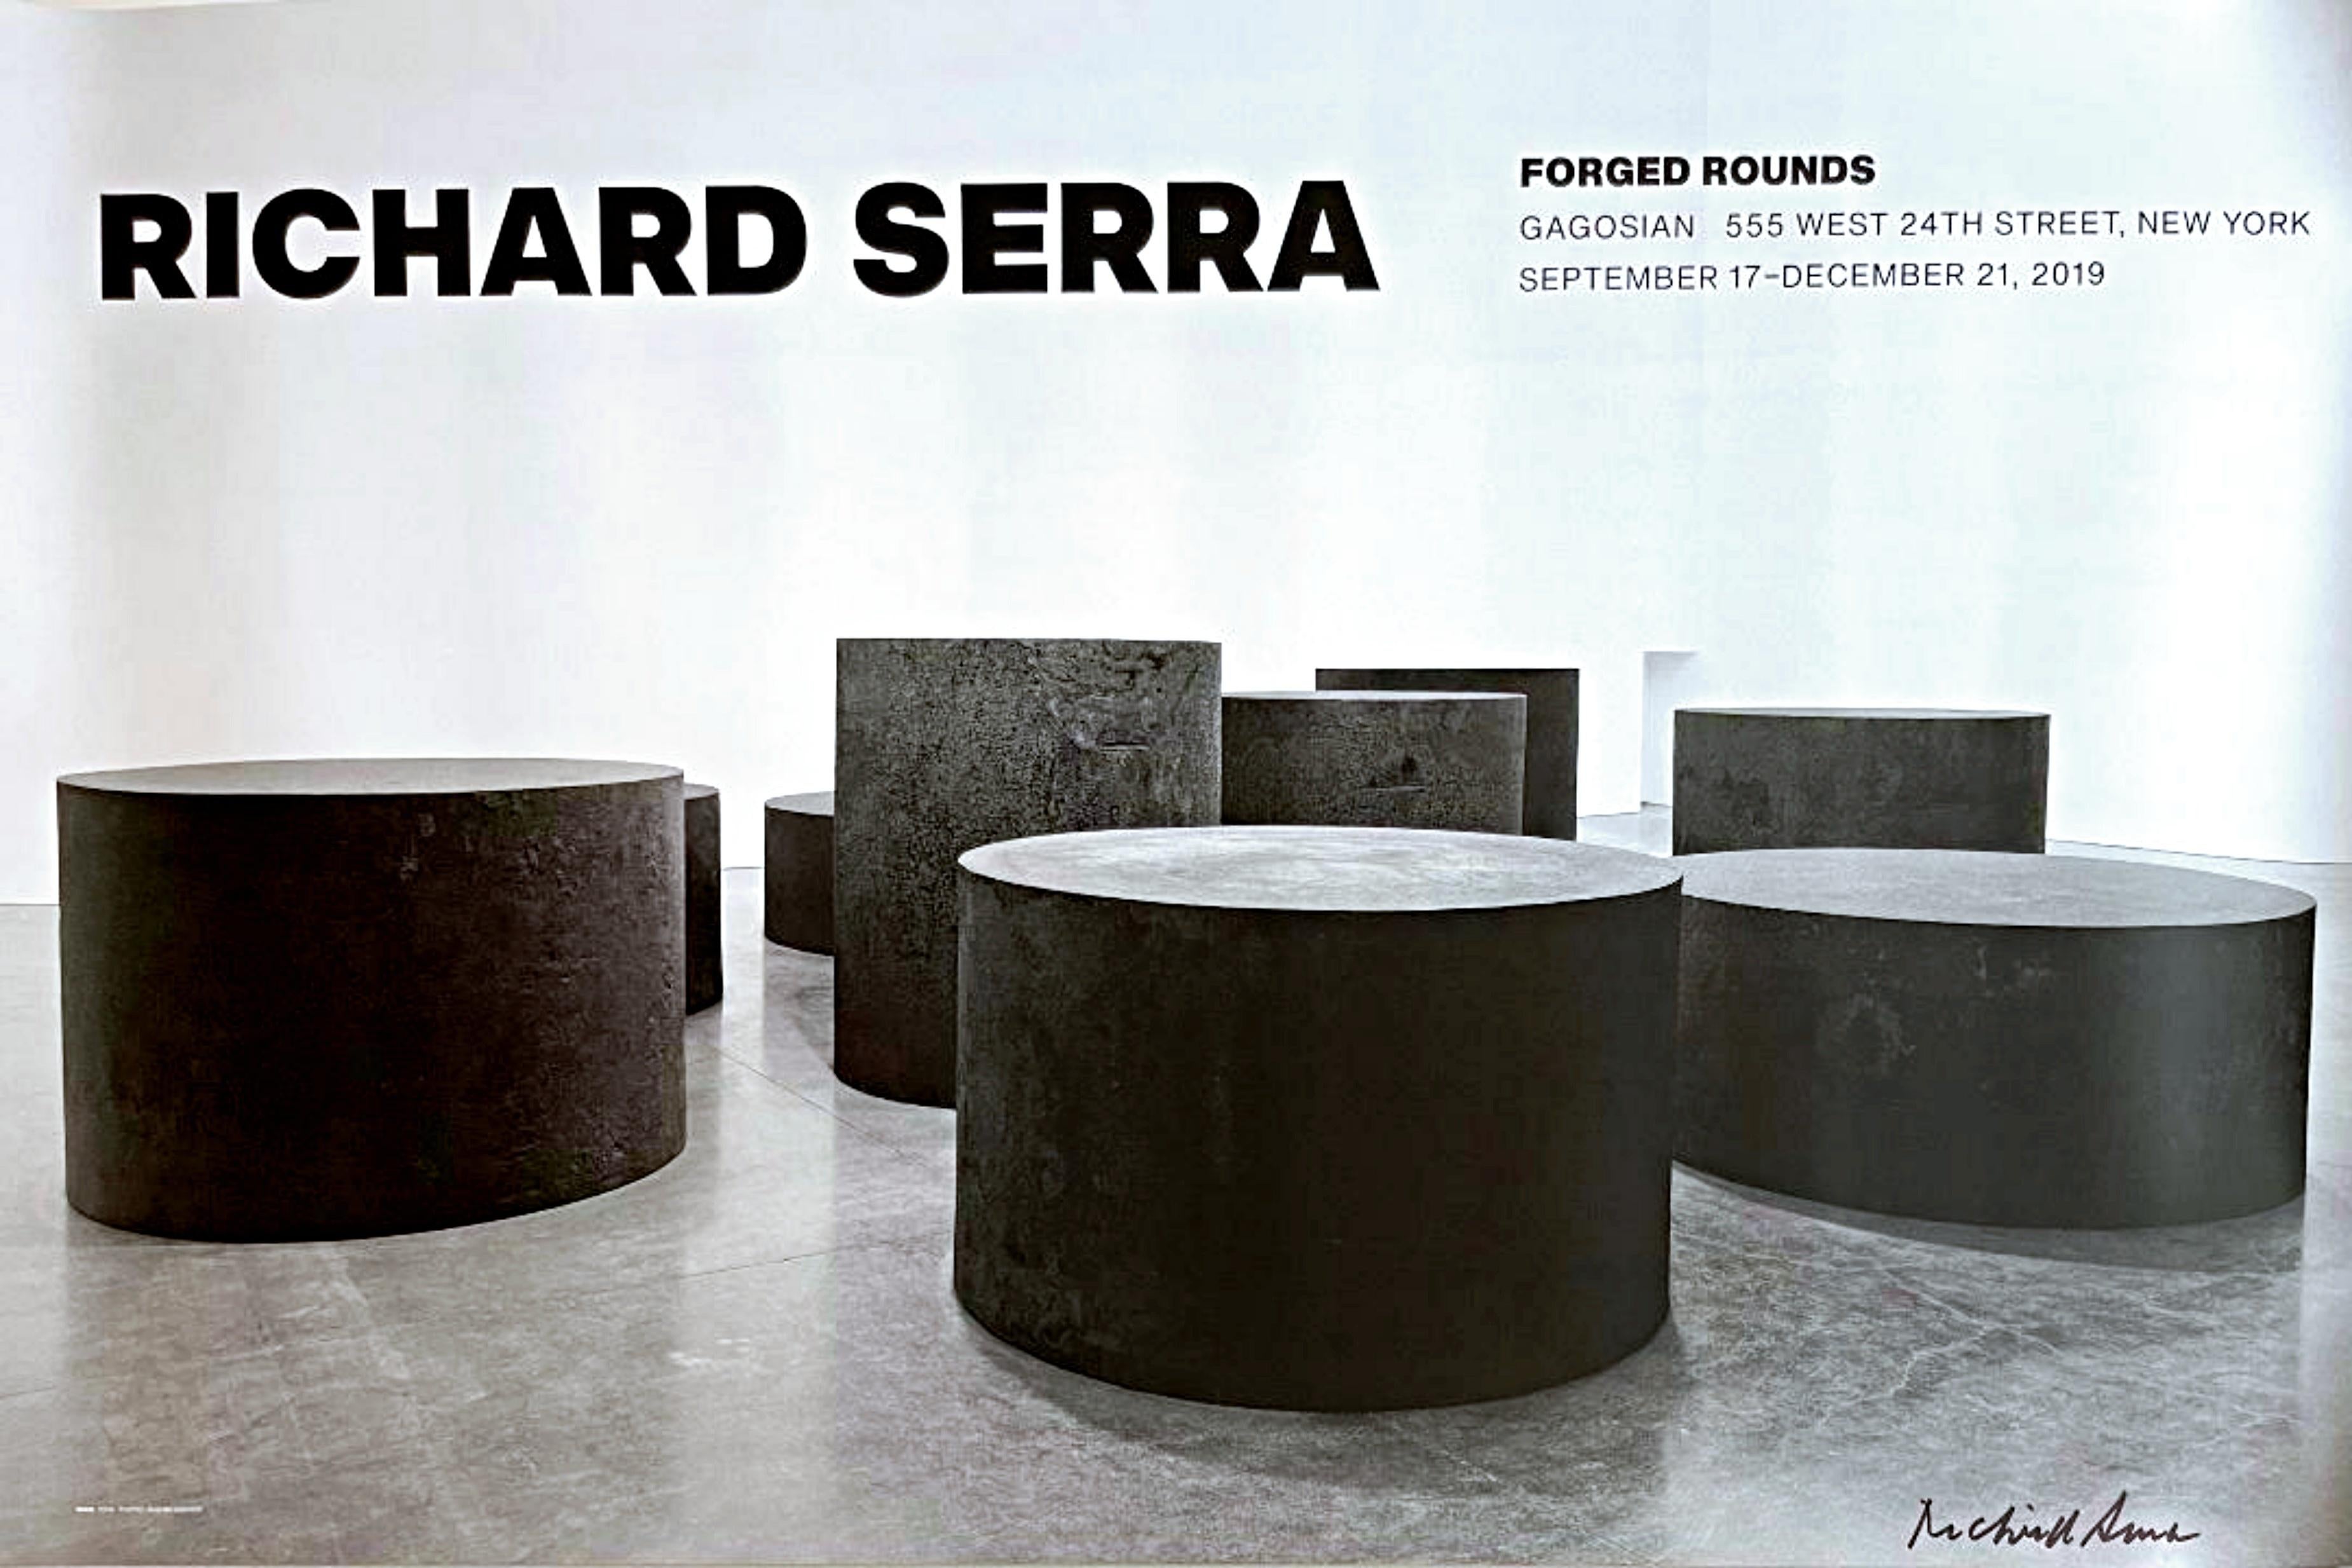 Richard Serra
Geschmiedete Kugeln (handsigniert), 2019
Offsetlithografie-Poster (handsigniert von Richard Serra)
26 × 40 Zoll
Auf der Vorderseite fett mit schwarzem Marker von Richard Serra signiert
Ungerahmt
Erworben von der Gagosian Gallery, New